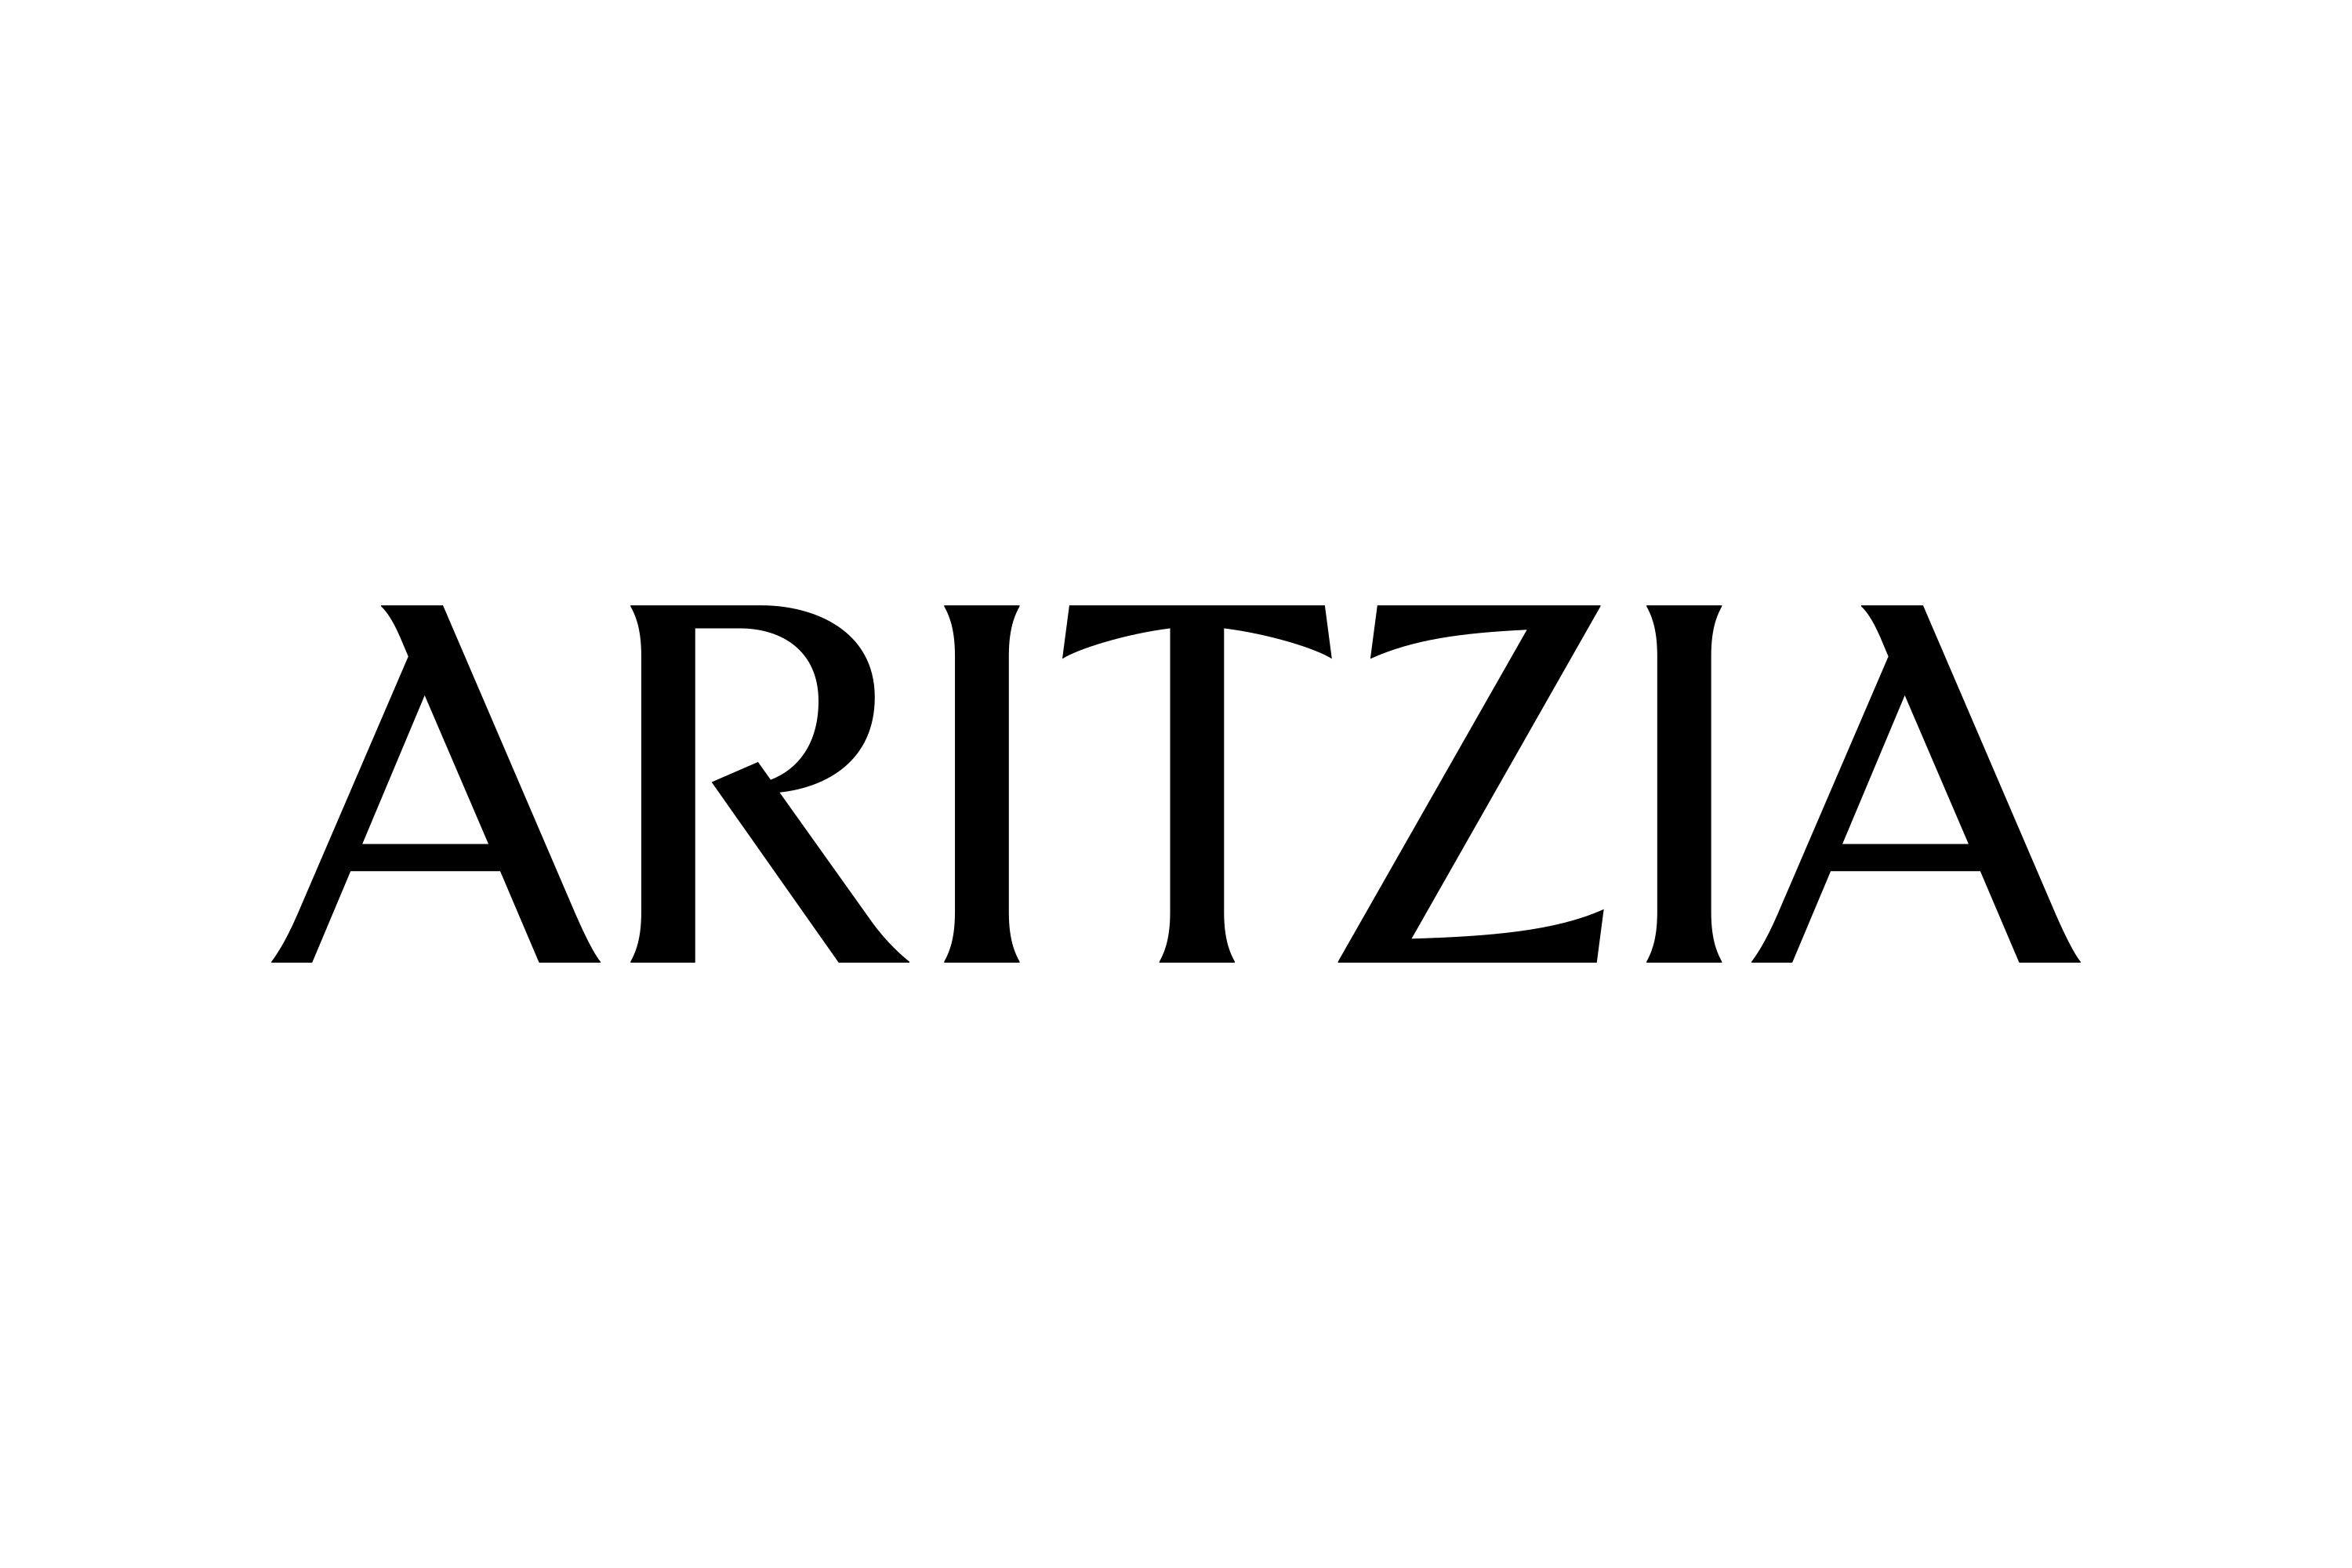 ARITZIA Brand Logo